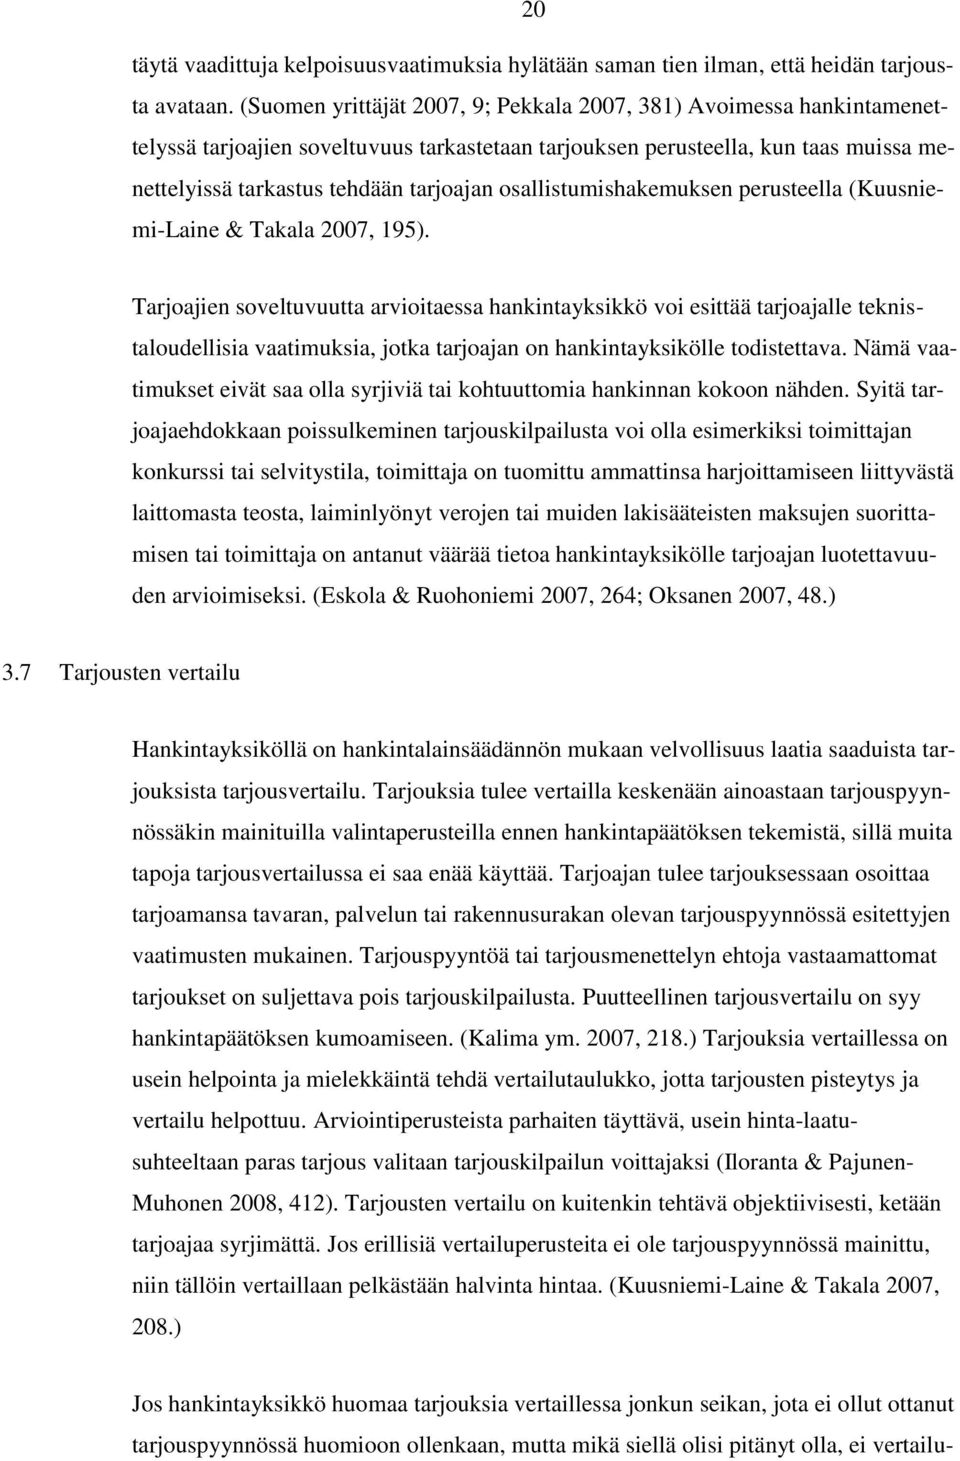 osallistumishakemuksen perusteella (Kuusniemi-Laine & Takala 2007, 195).